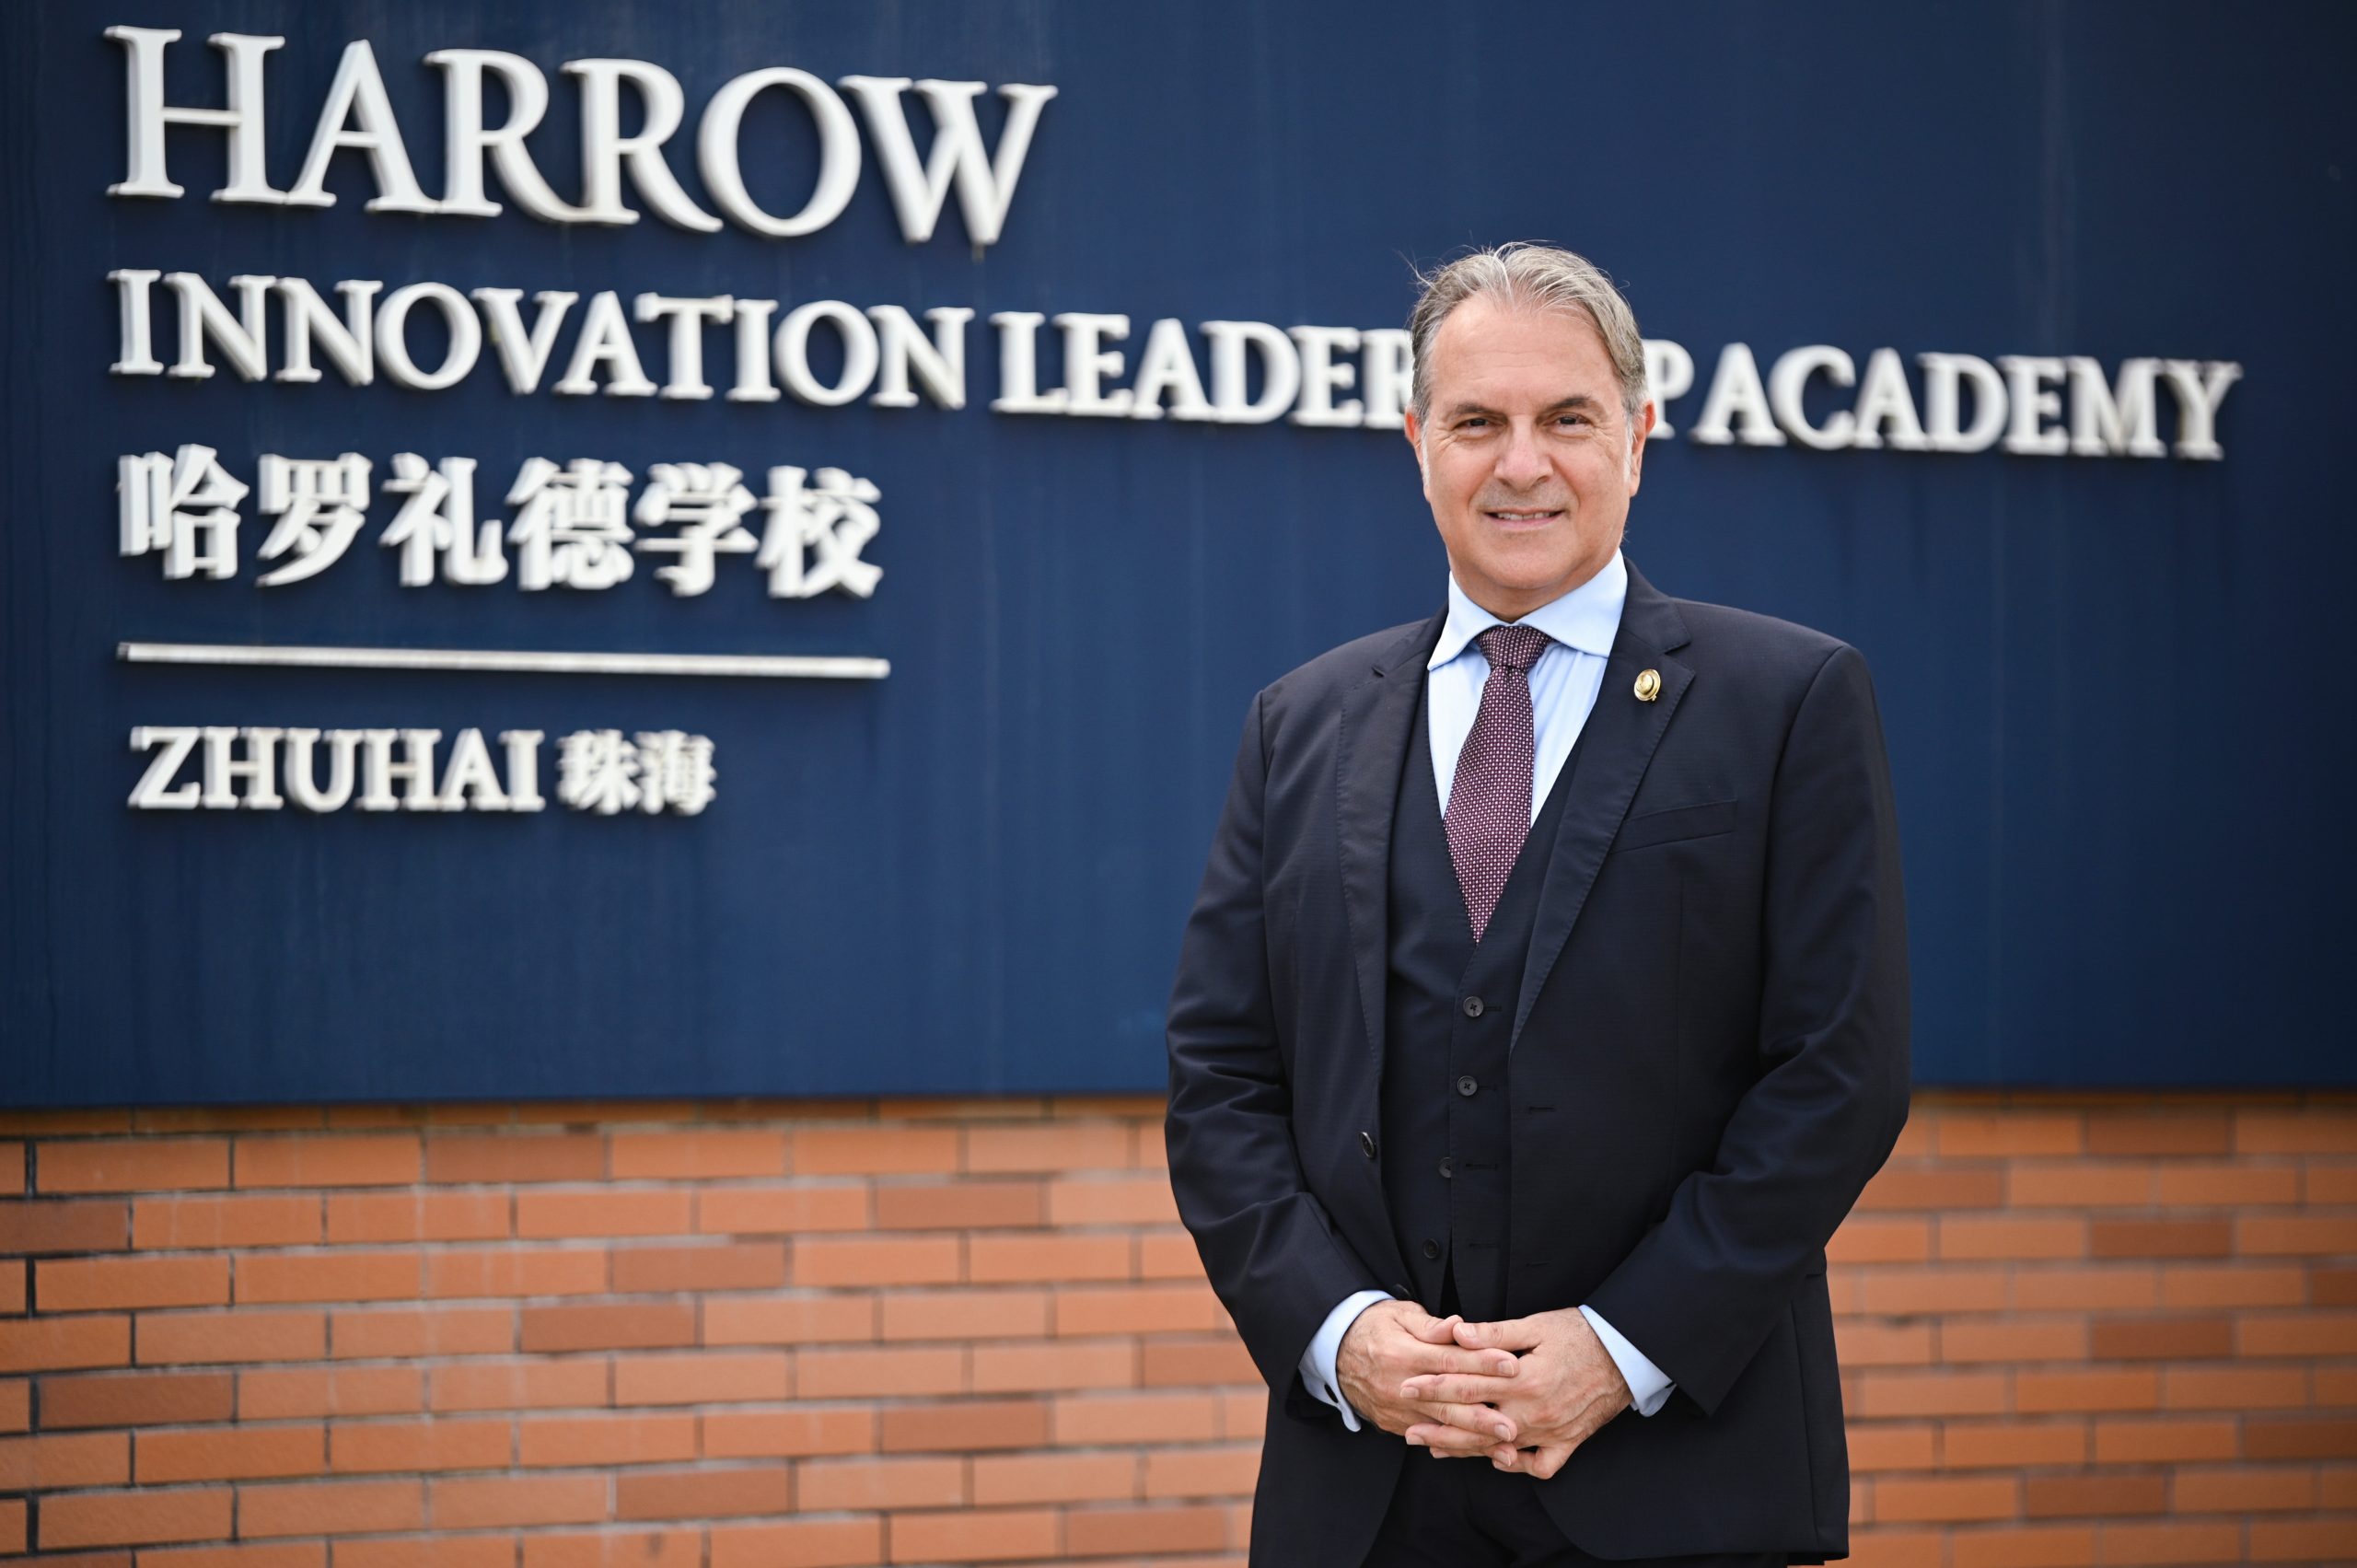 Dr Max Caruso, Head Master of Harrow Innovation Leadership Academy Zhuhai